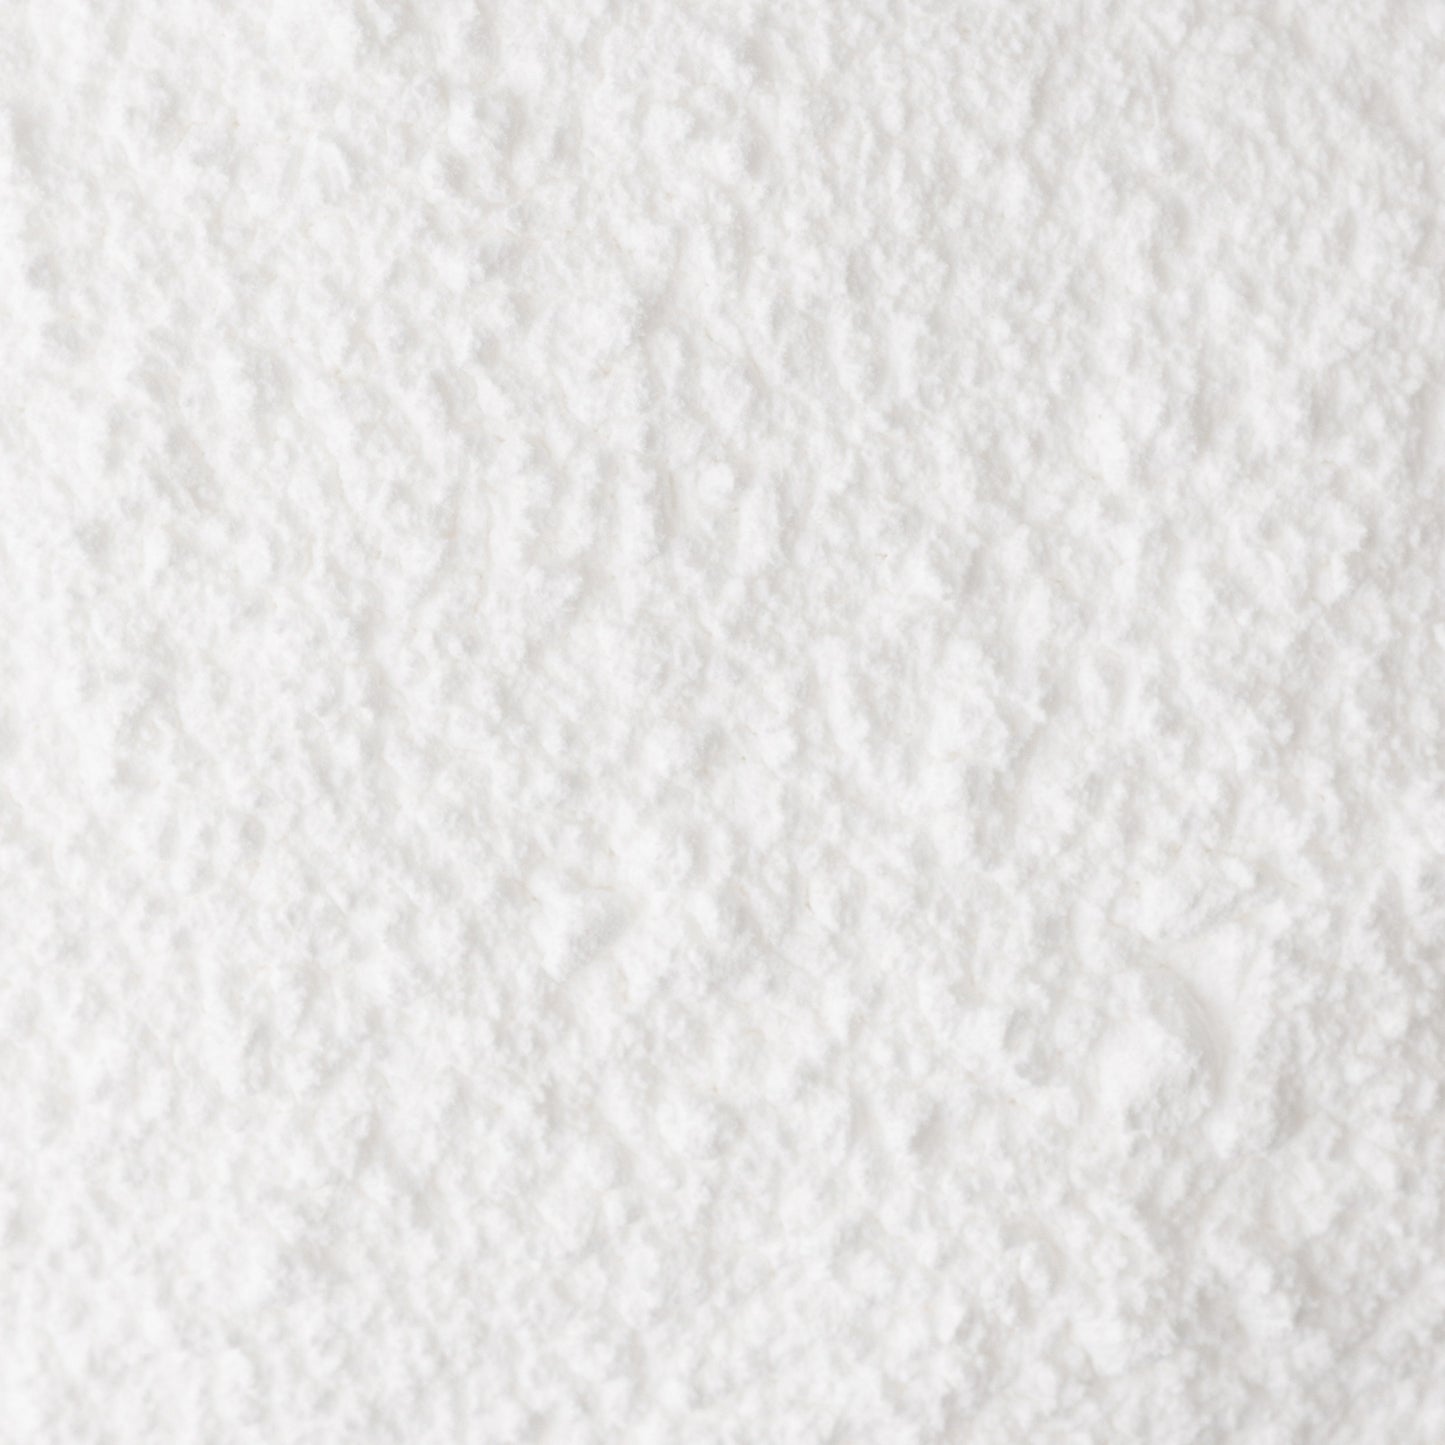 Sweetshop Powdered Sugar 1lb-White